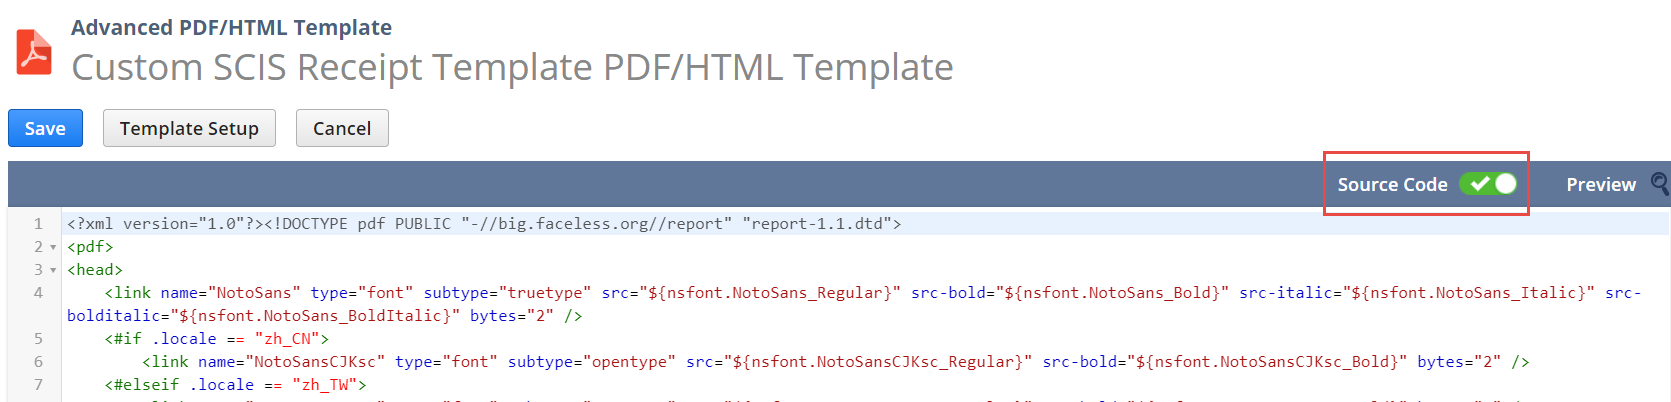 Custom SCIS Receipt Template PDF/HTML Template